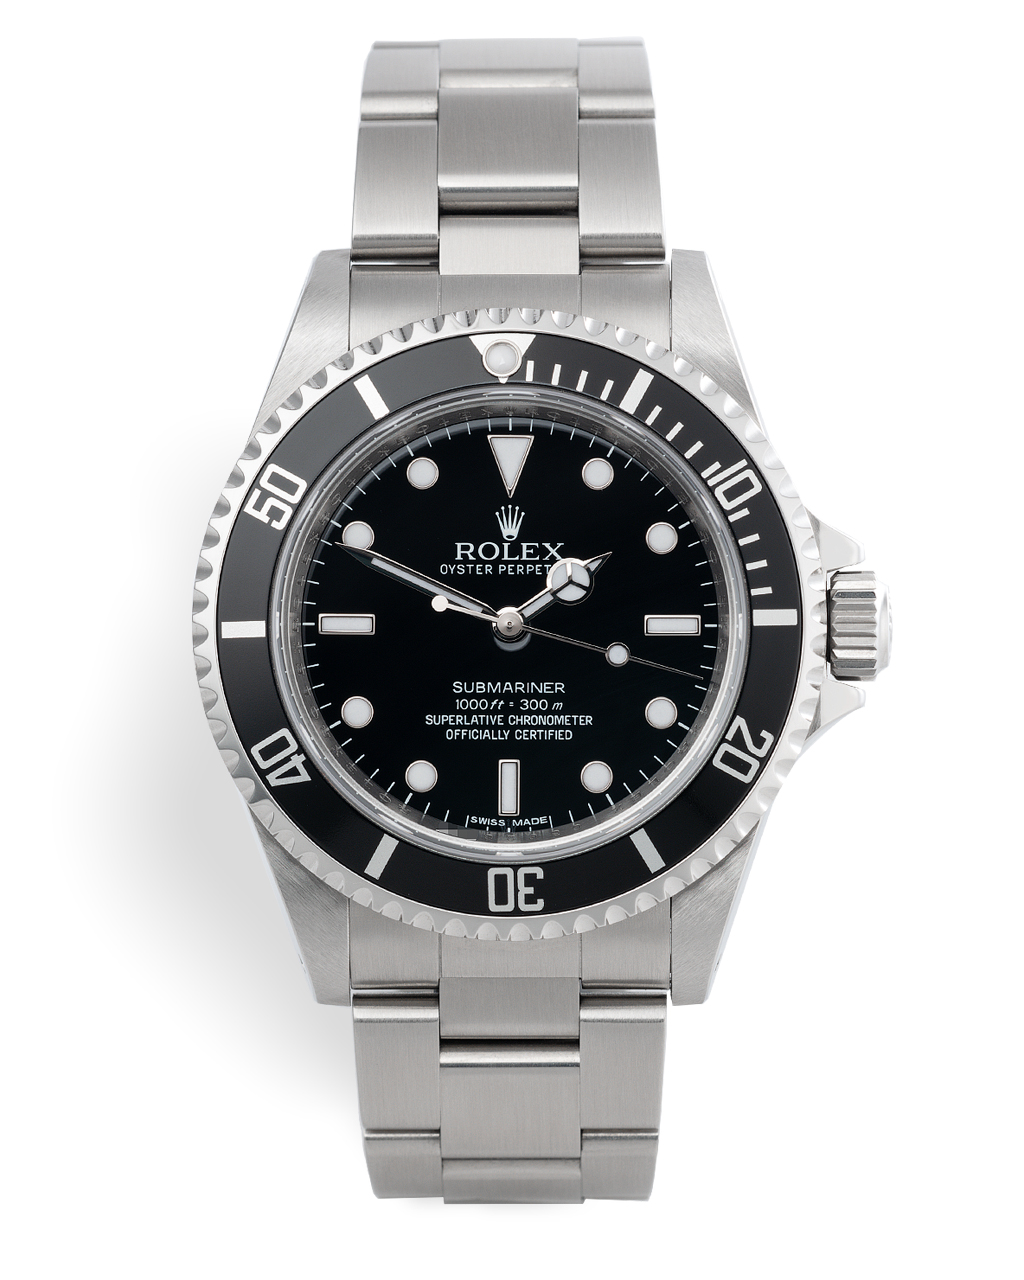 Rolex Submariner Watches | ref 14060M | '4 Line' Final Batch | The ...